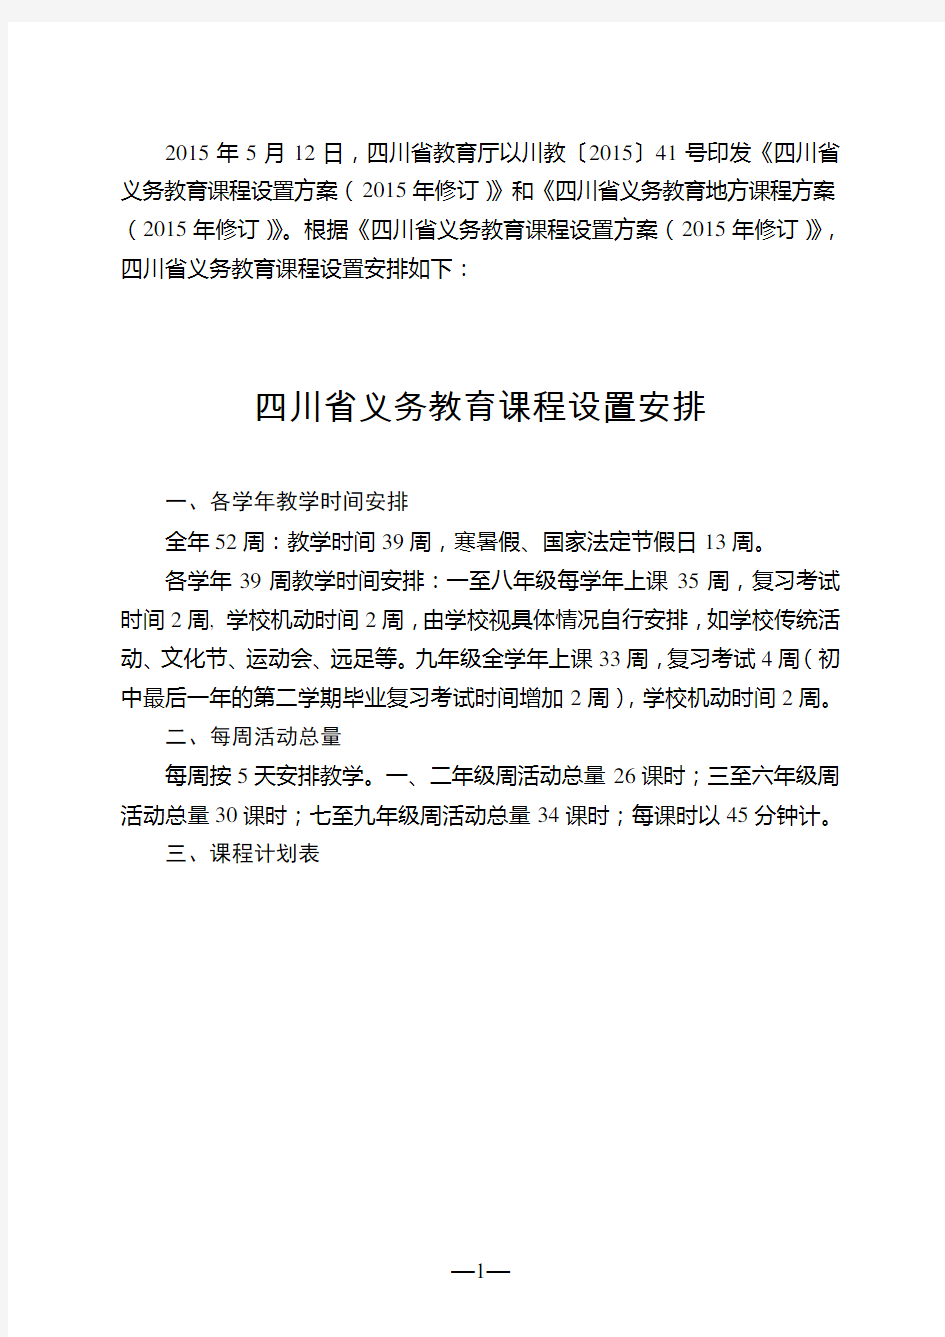 四川省义务教育课程计划表(2015年修订)